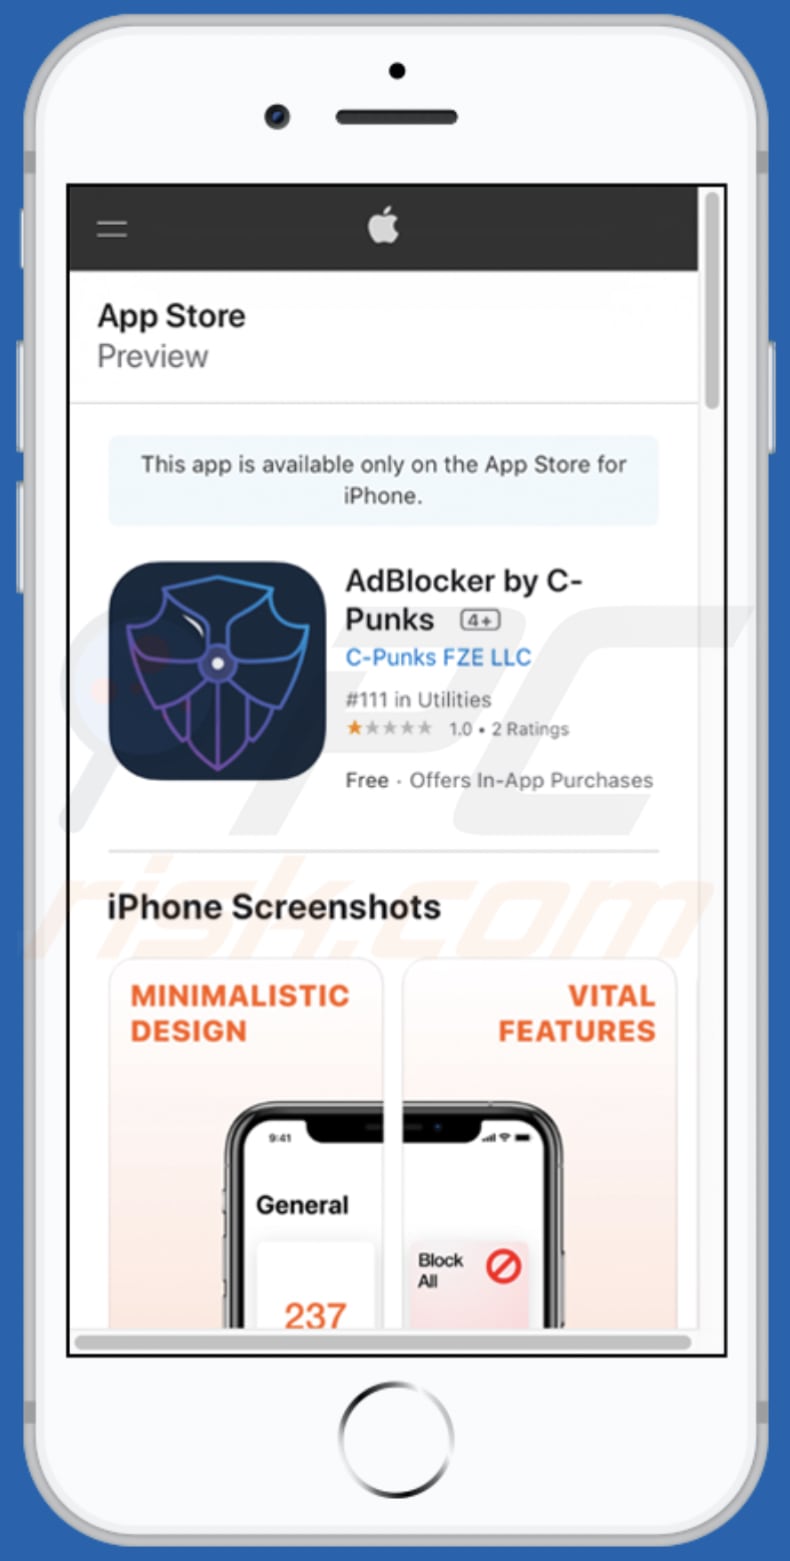 optavut.com pop-up scam app promoted via third variant